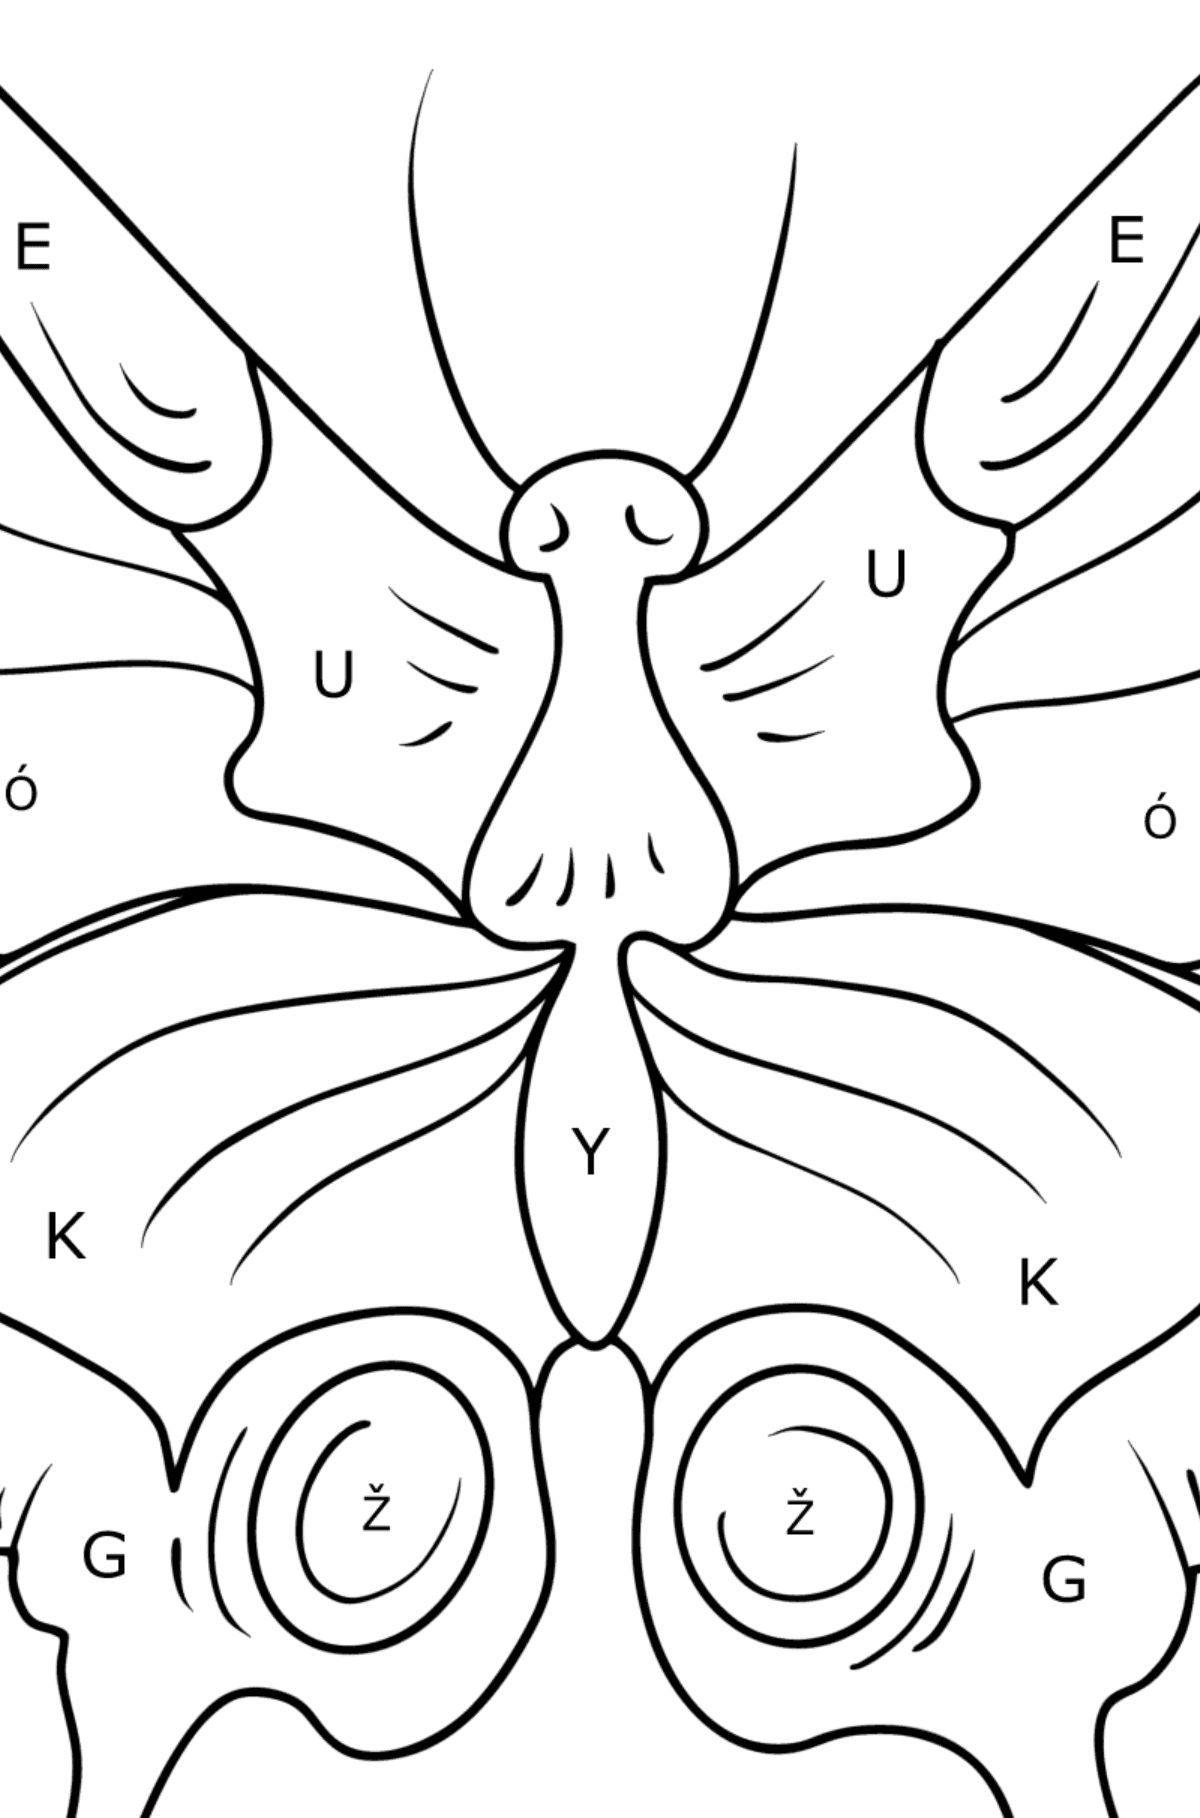 Omalovánka motýl otakárek - Omalovánka podle Písmen pro děti